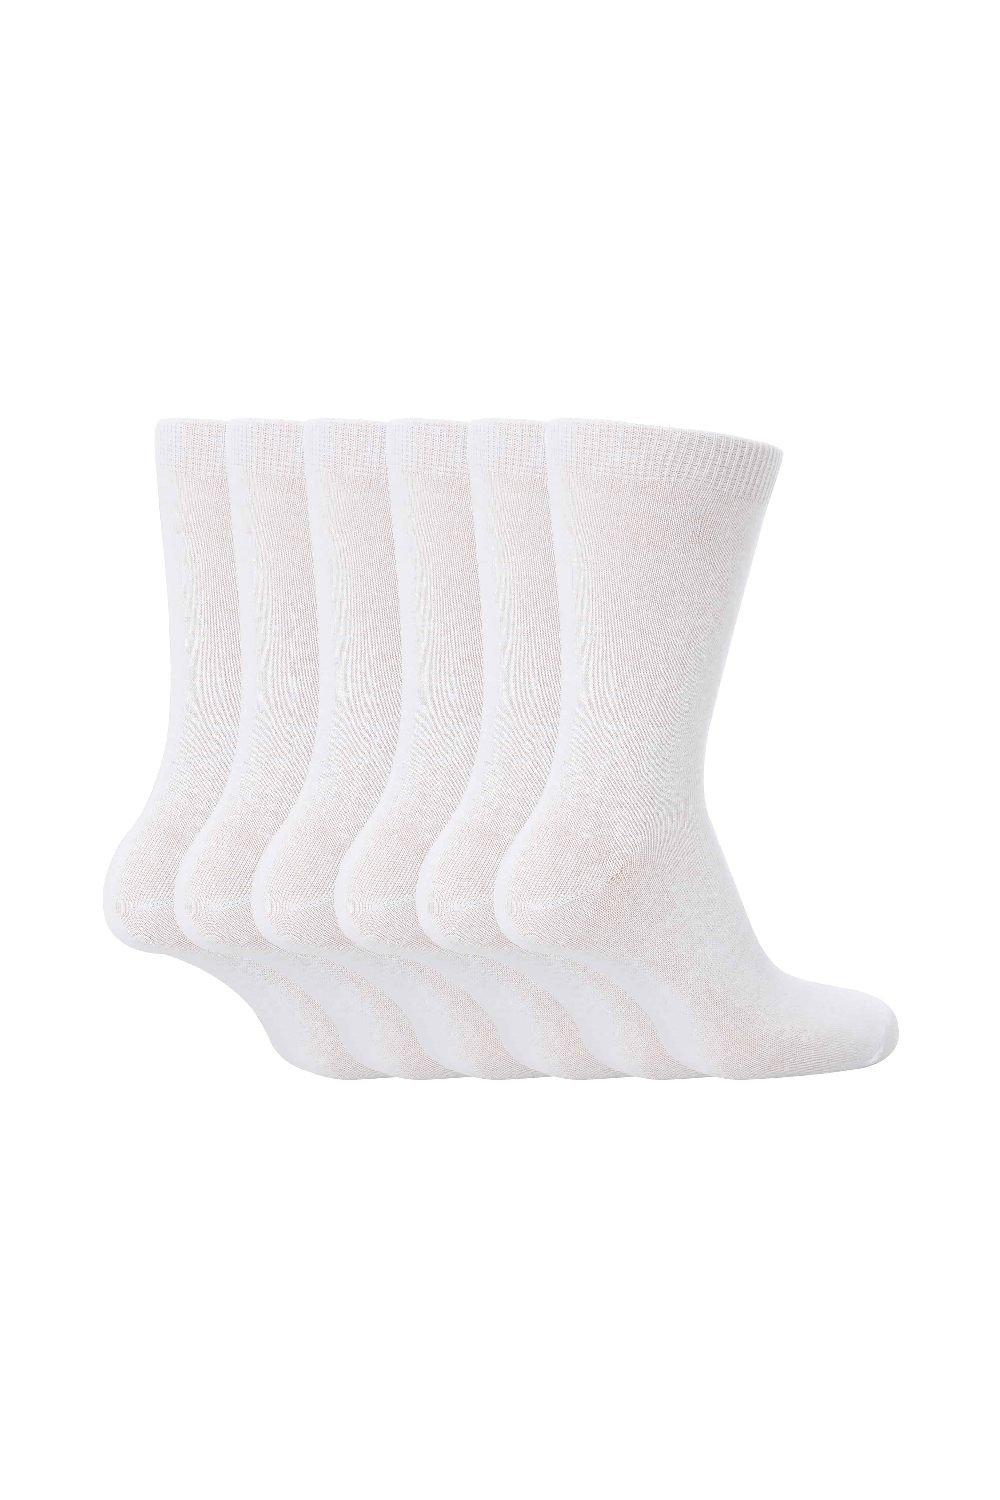 6 пар простых школьных мягких хлопковых носков Sock Snob, белый